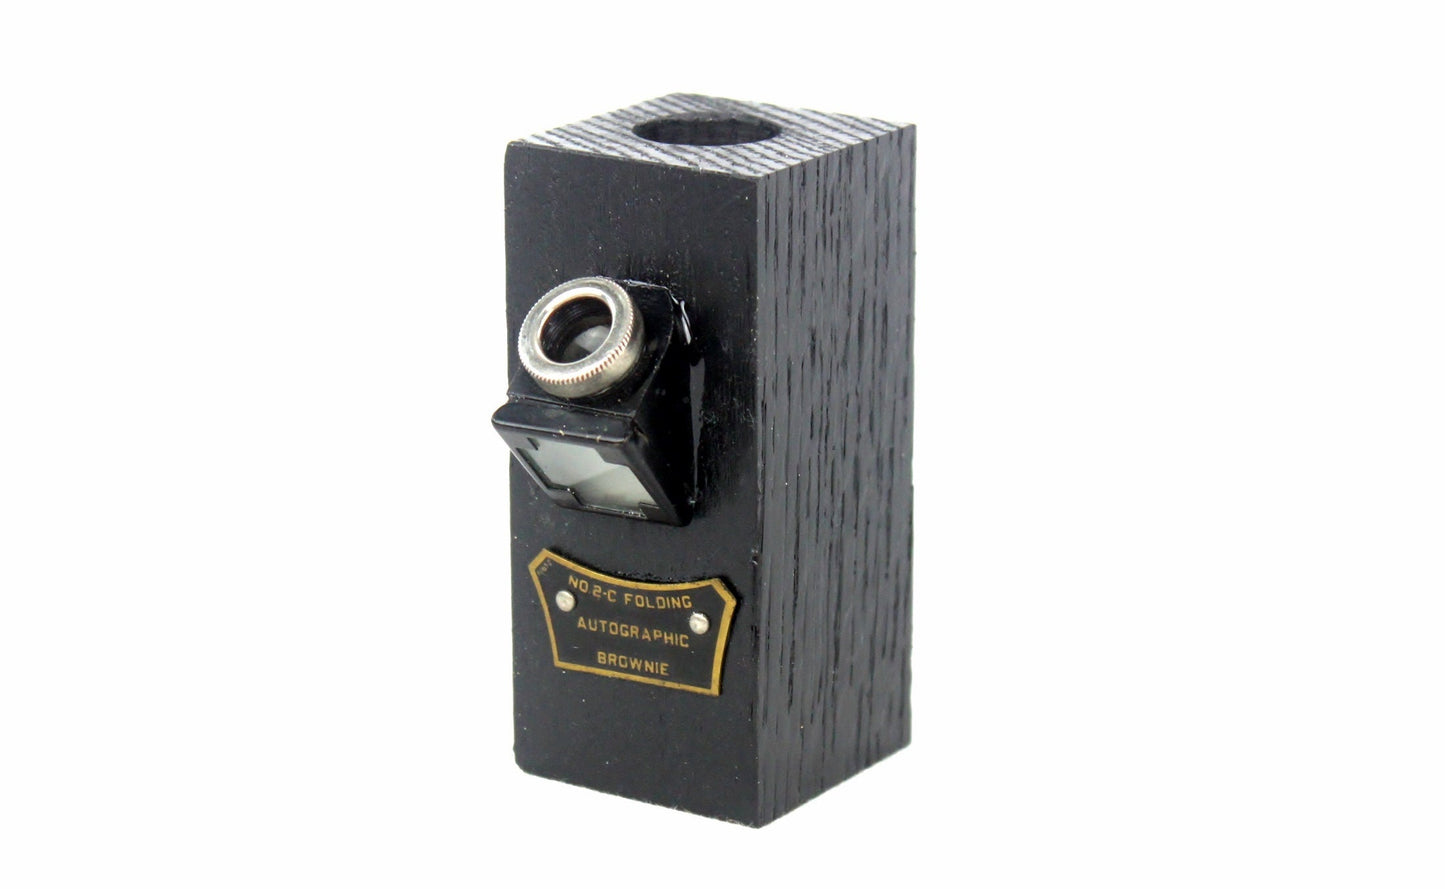 LightAndTimeArt Bottle Stoppers & Savers Steampunk Wine Bottle Stopper with Stand - Vintage Kodak No. 2-C Folding Camera